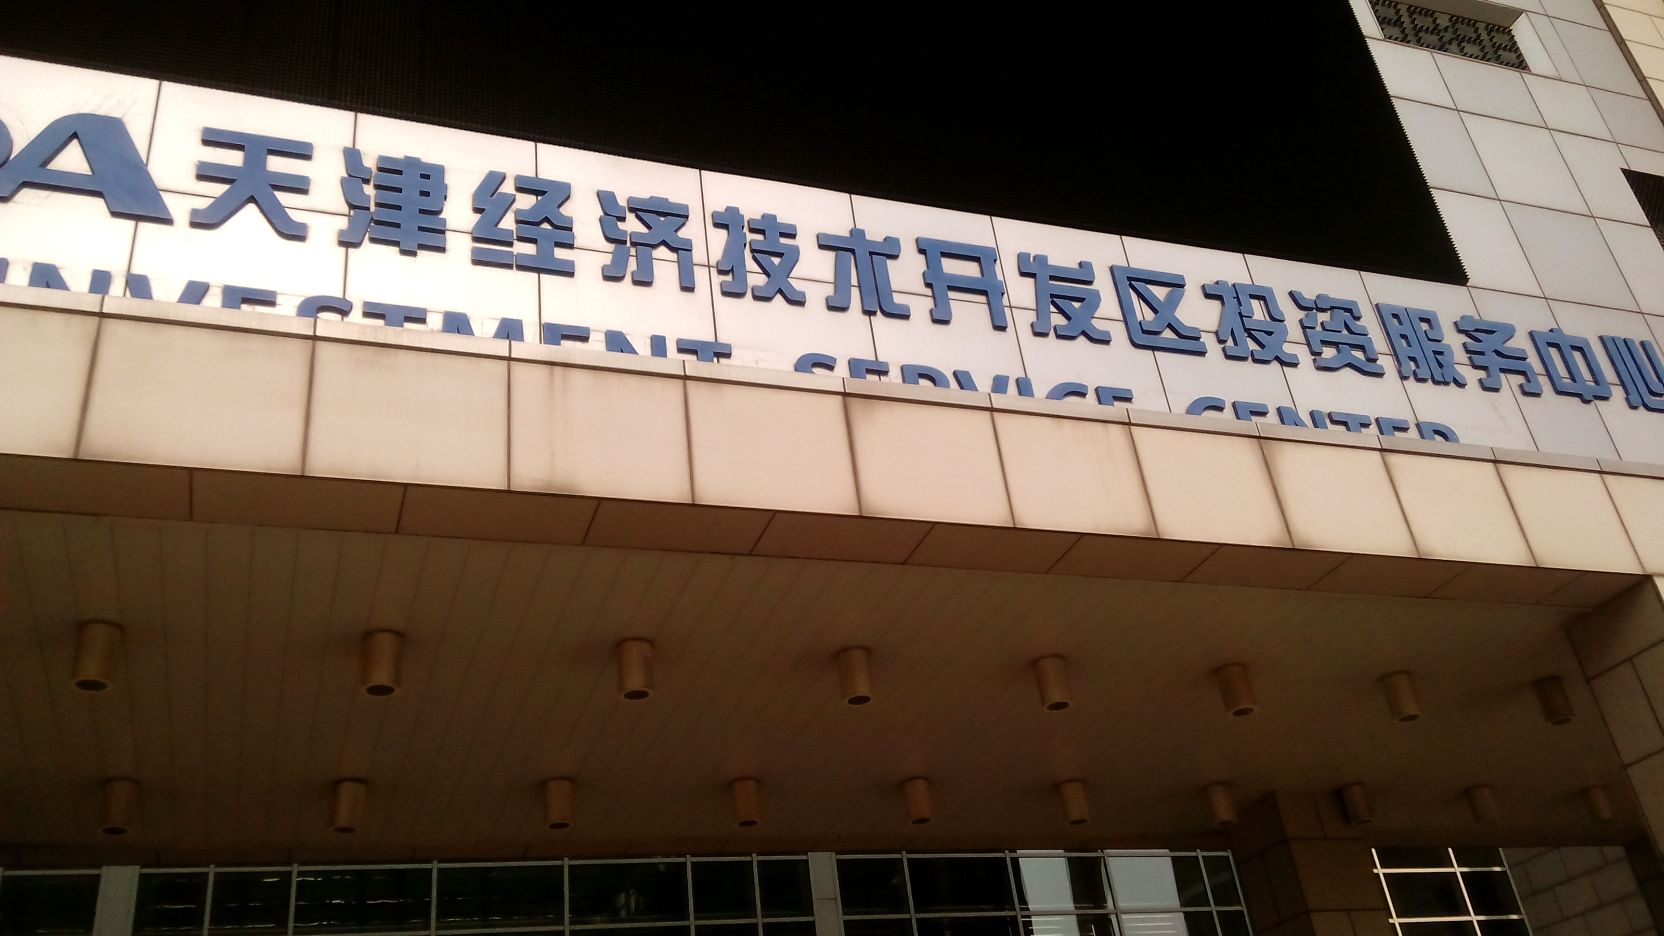           别名:天津经济技术开发